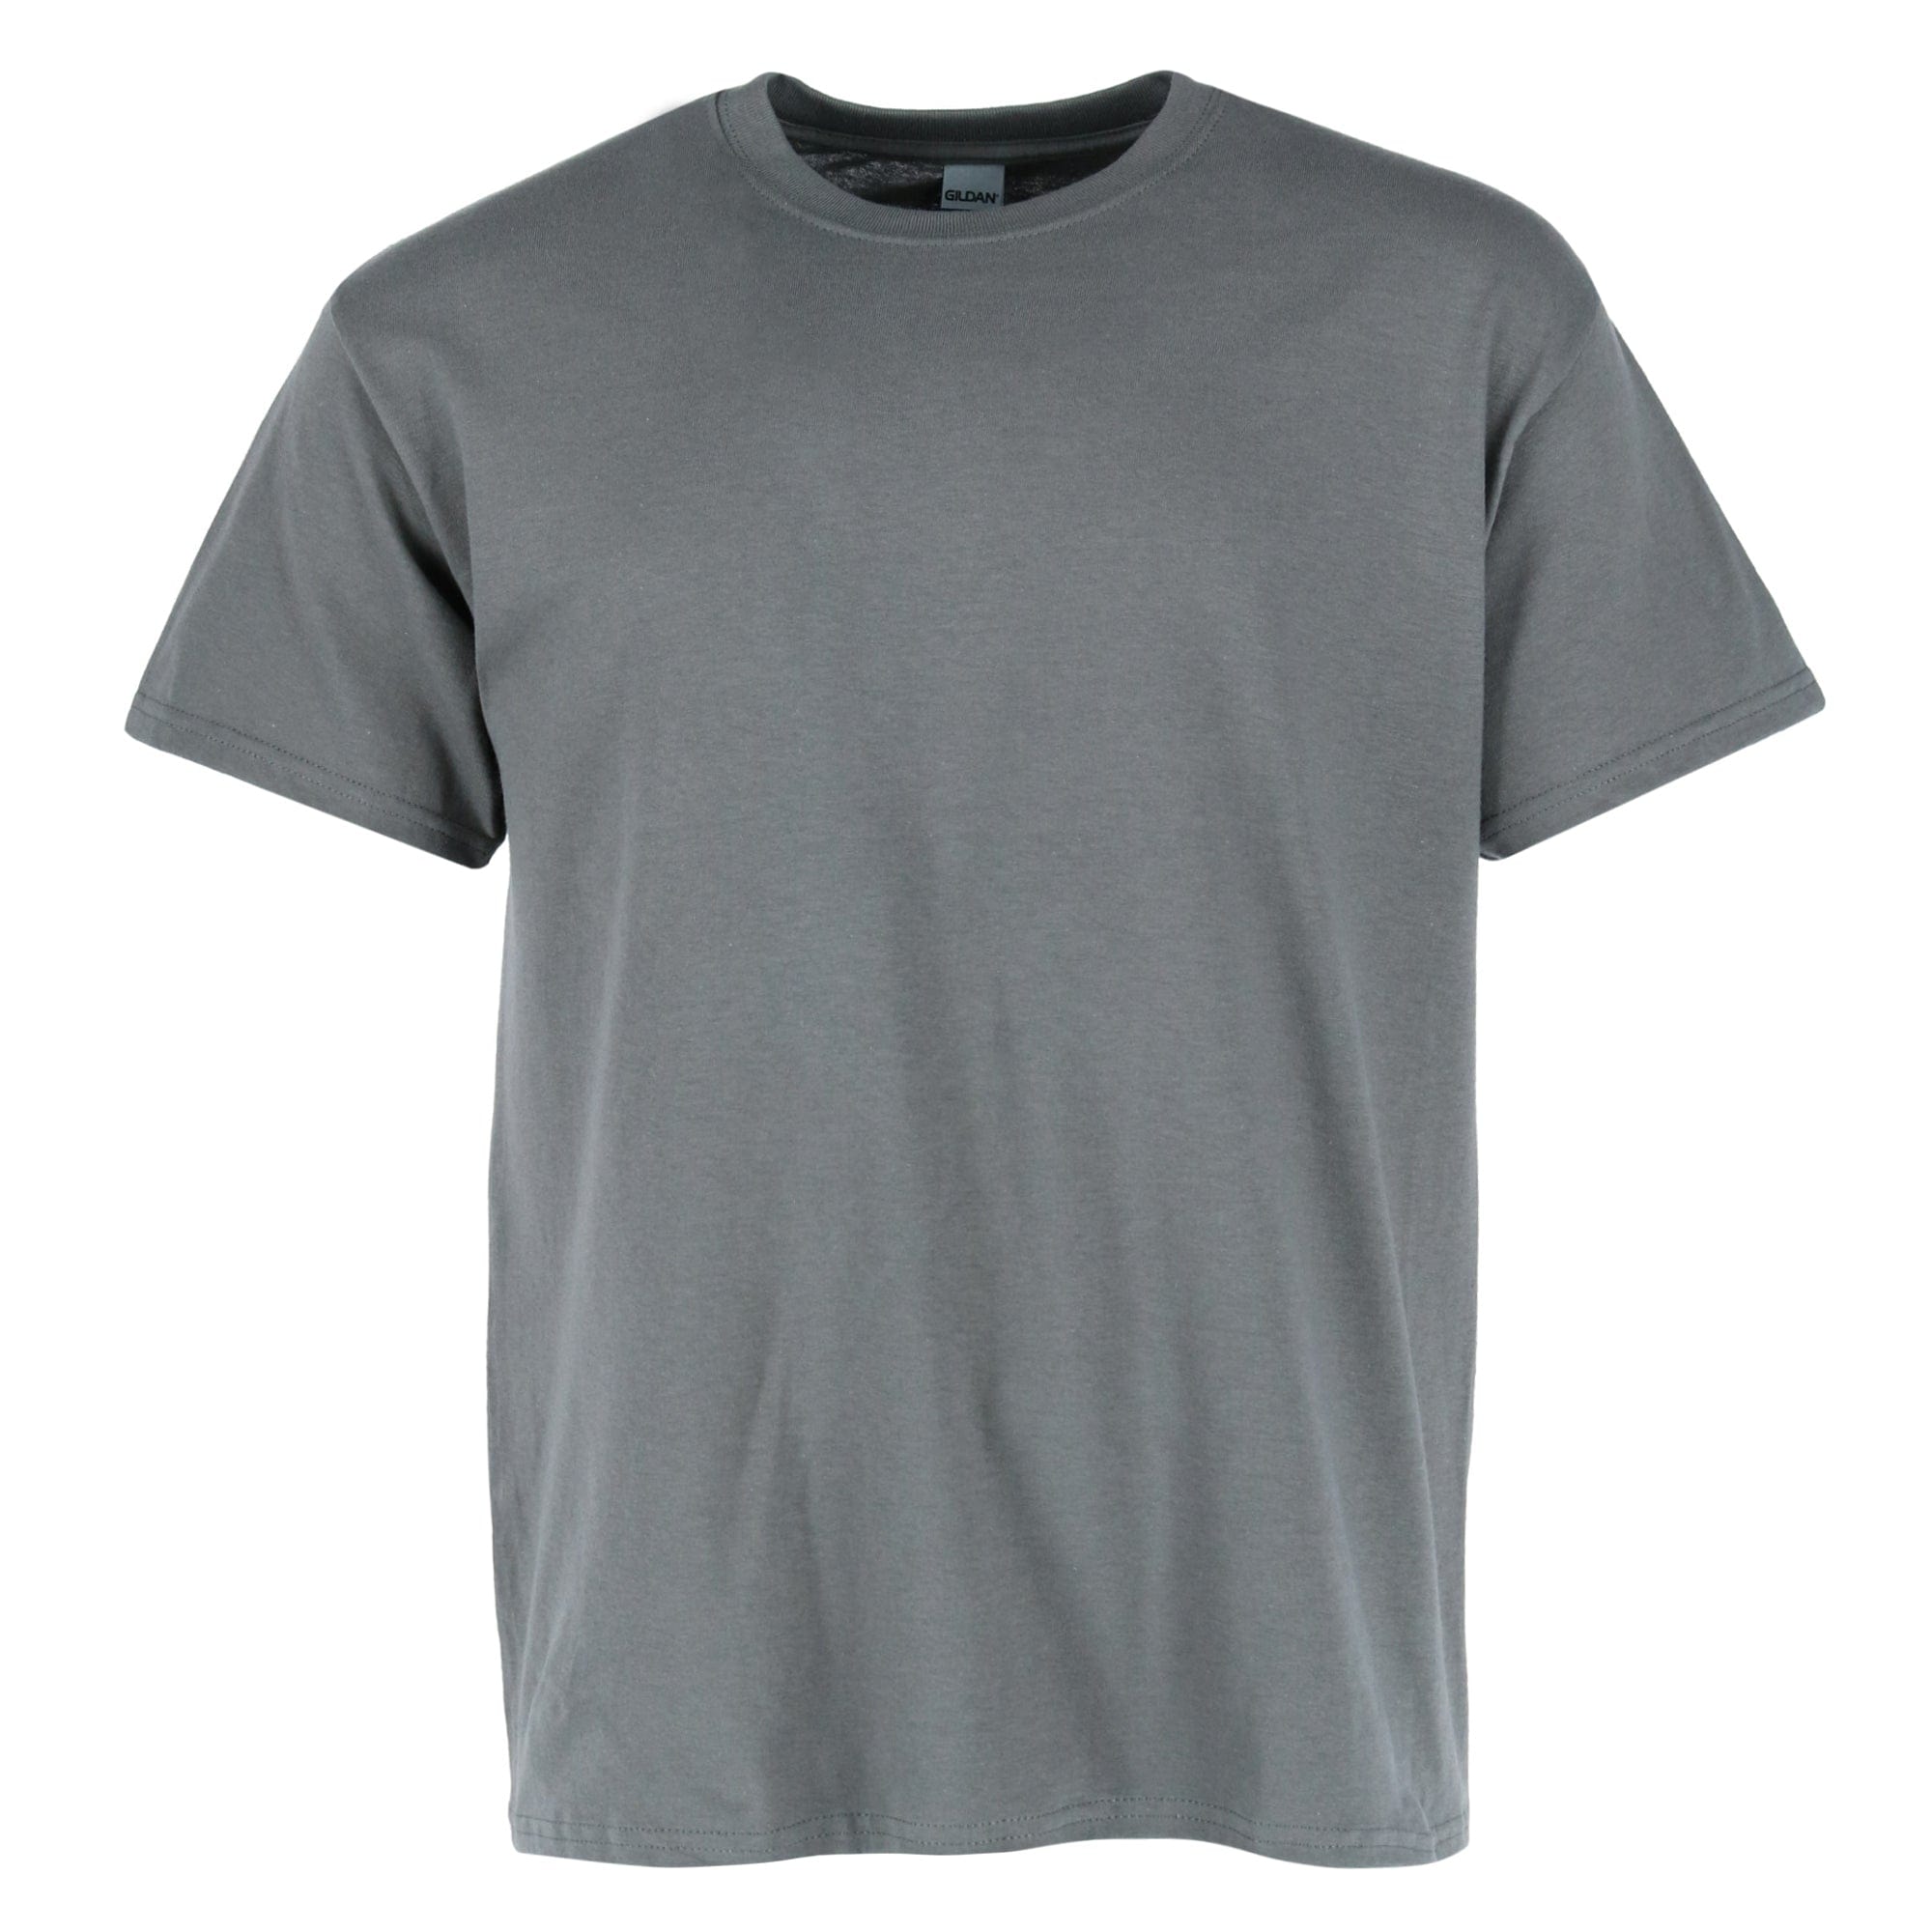 Men's Crew Neck Cotton T Shirt by Gildan | Pajama Tops at BeltOutlet.com